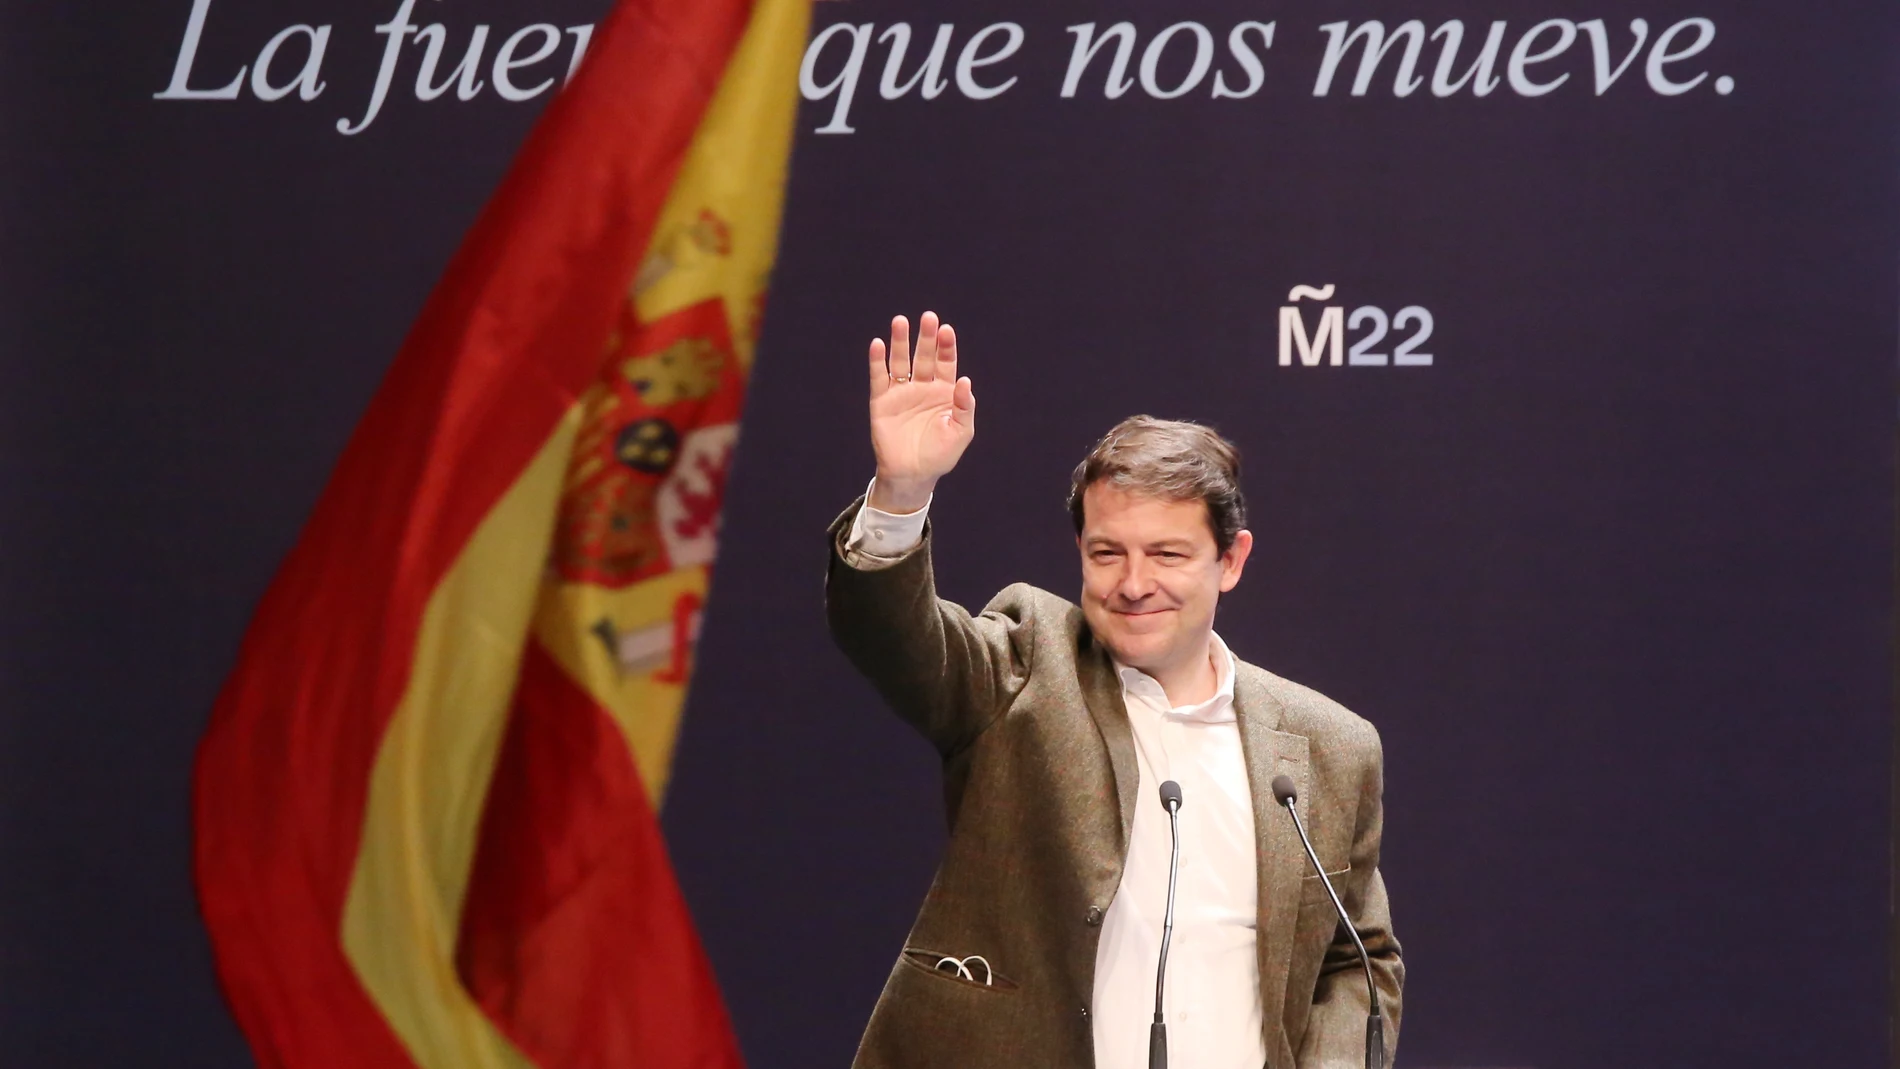 El candidato del PP a la Presidencia de la Junta de Castilla y León, Alfonso Fernández Mañueco, participa en un mitin en Soria